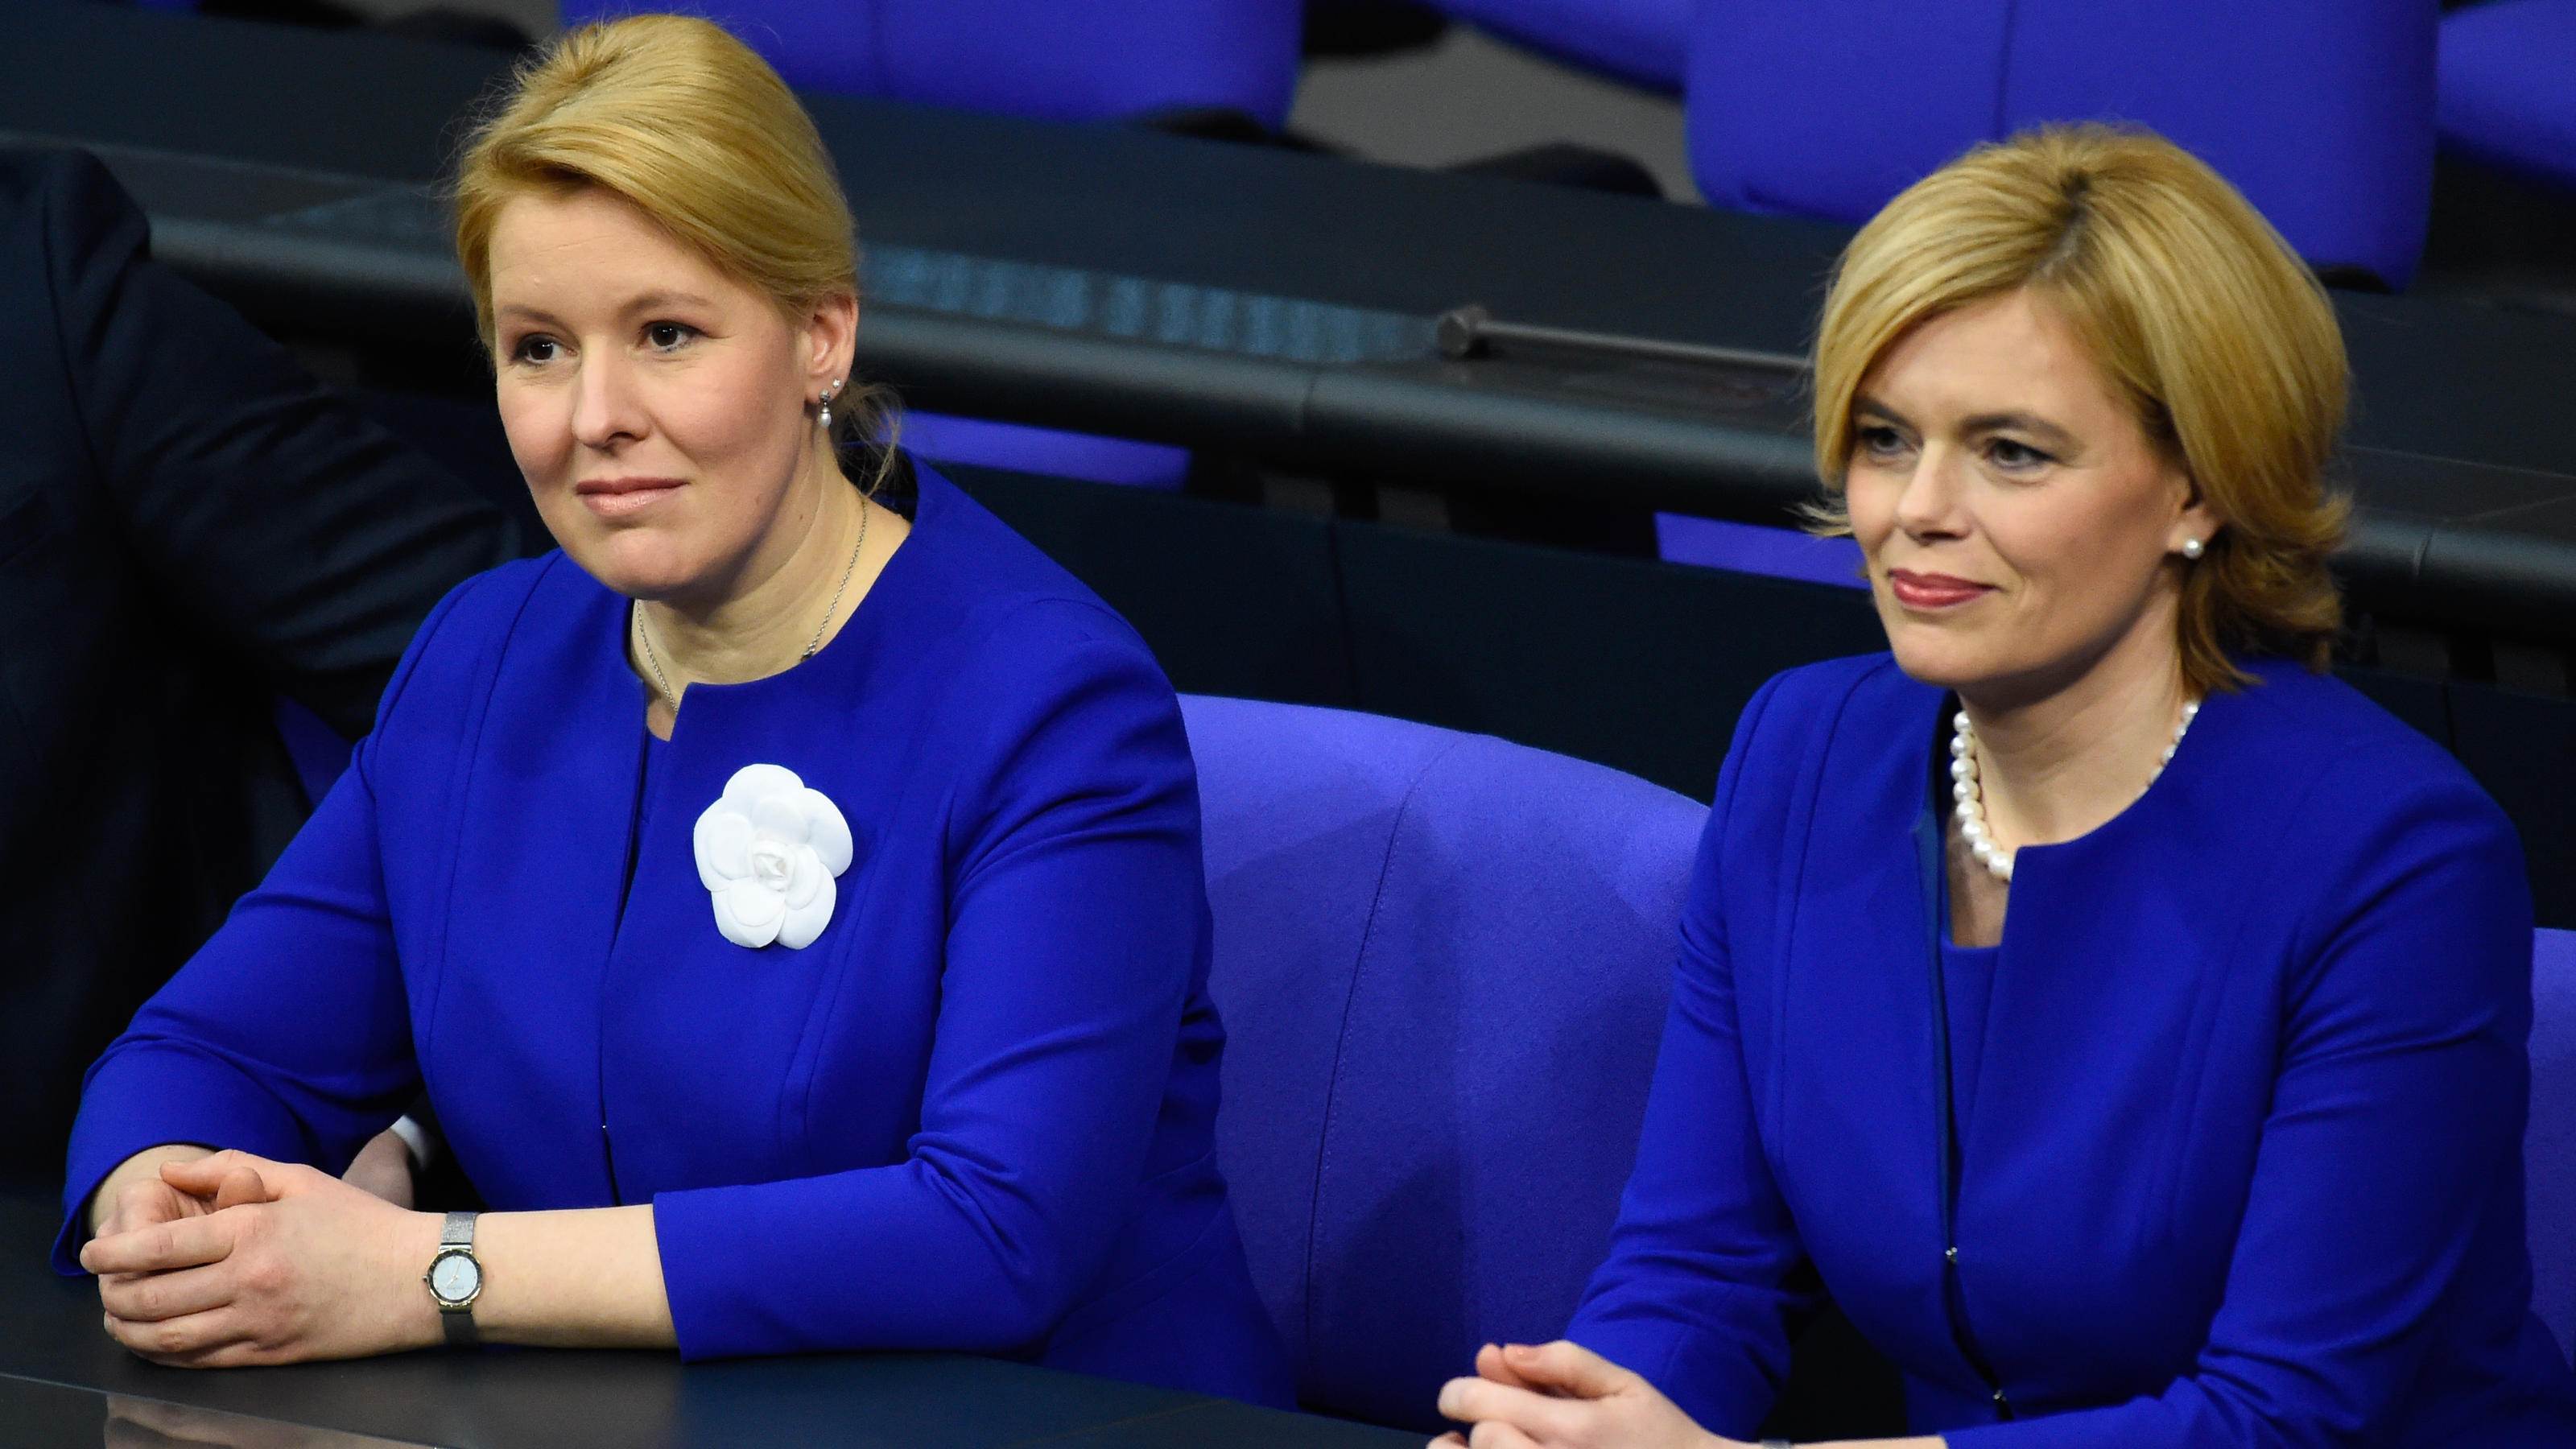 Partnerlook in blau: Franziska Giffey und Julia Klöckner bei ihrer Vereidigung im Bundestag.